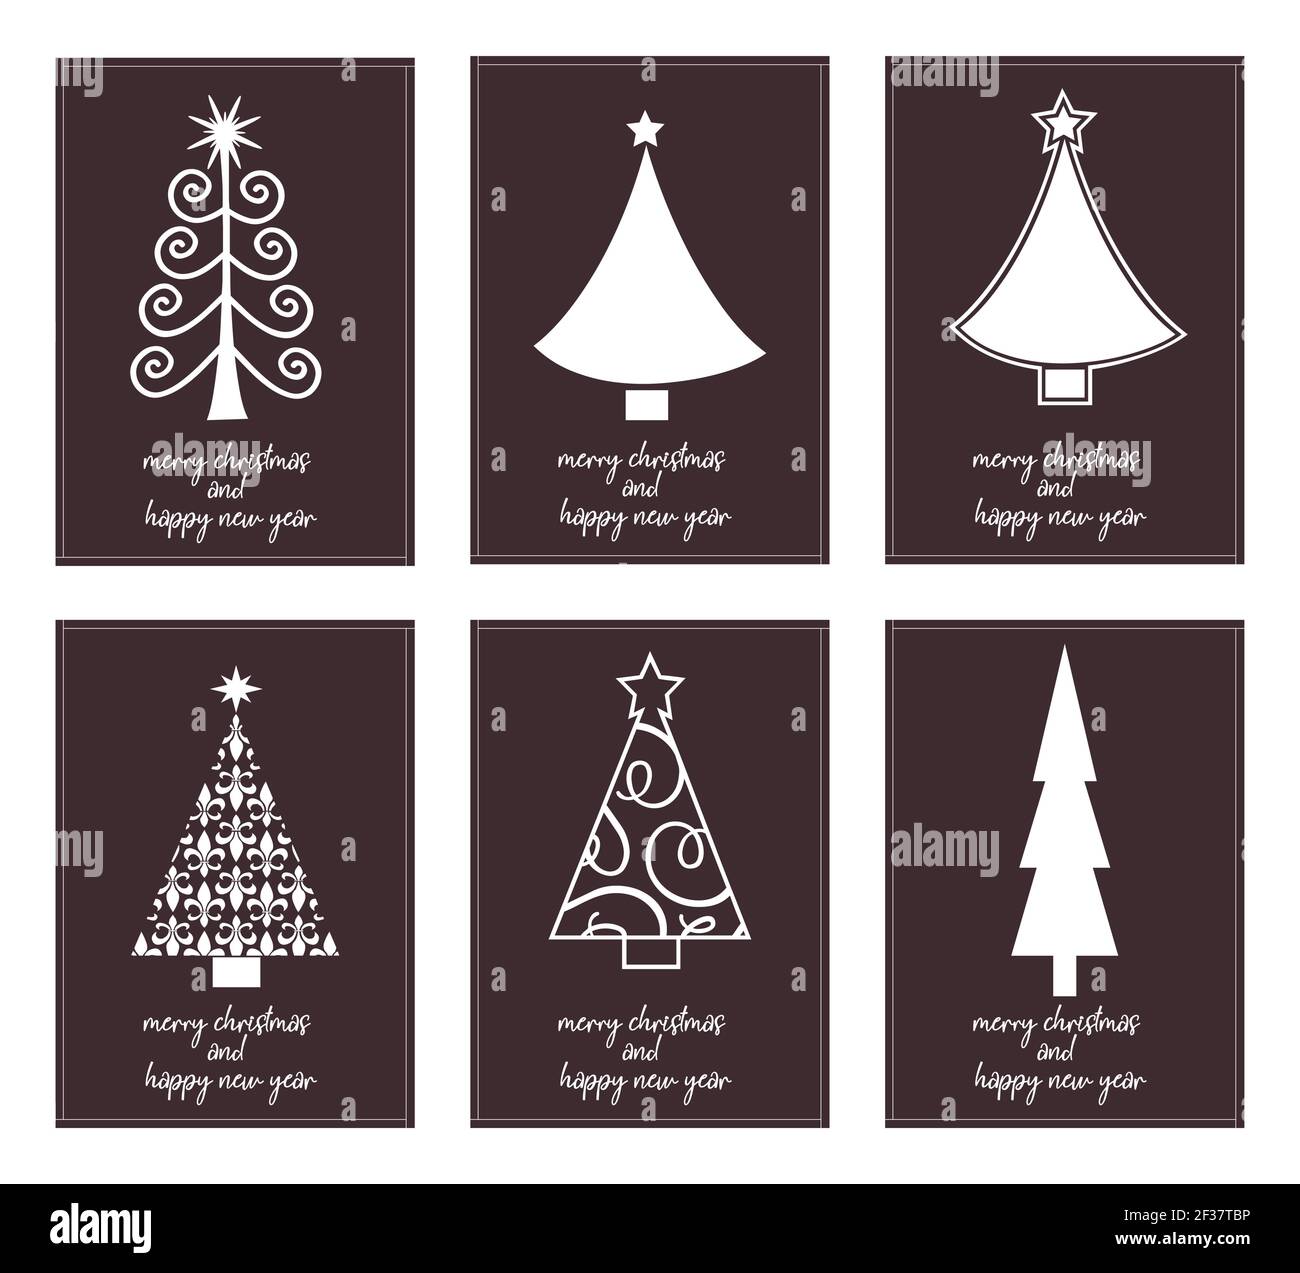 Six affiches minimalistes typographie joyeux noël et bonne année avec différents arbres de noël - vecteur Illustration de Vecteur